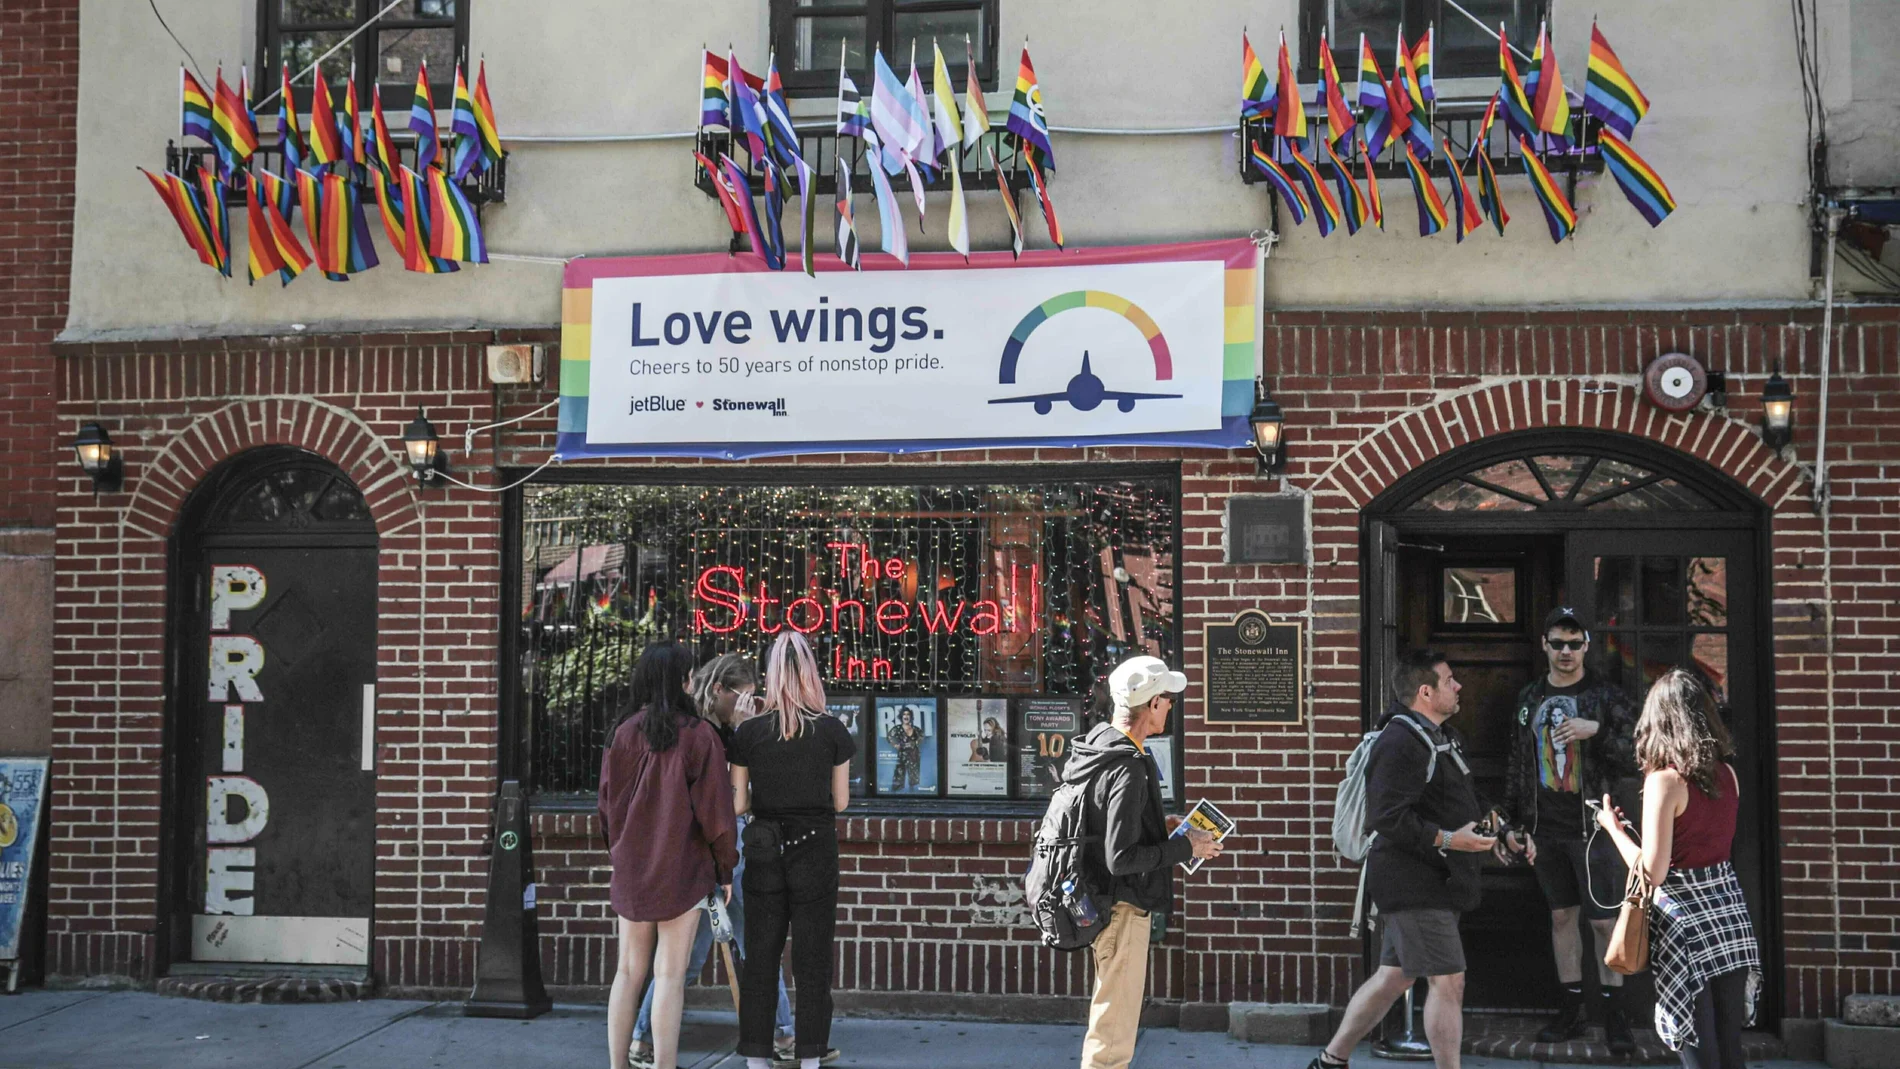 Fachada del emblemático bar Stonewall Inn, donde sucedieron las protestas que conmemoran el Día del Orgullo LGTBI